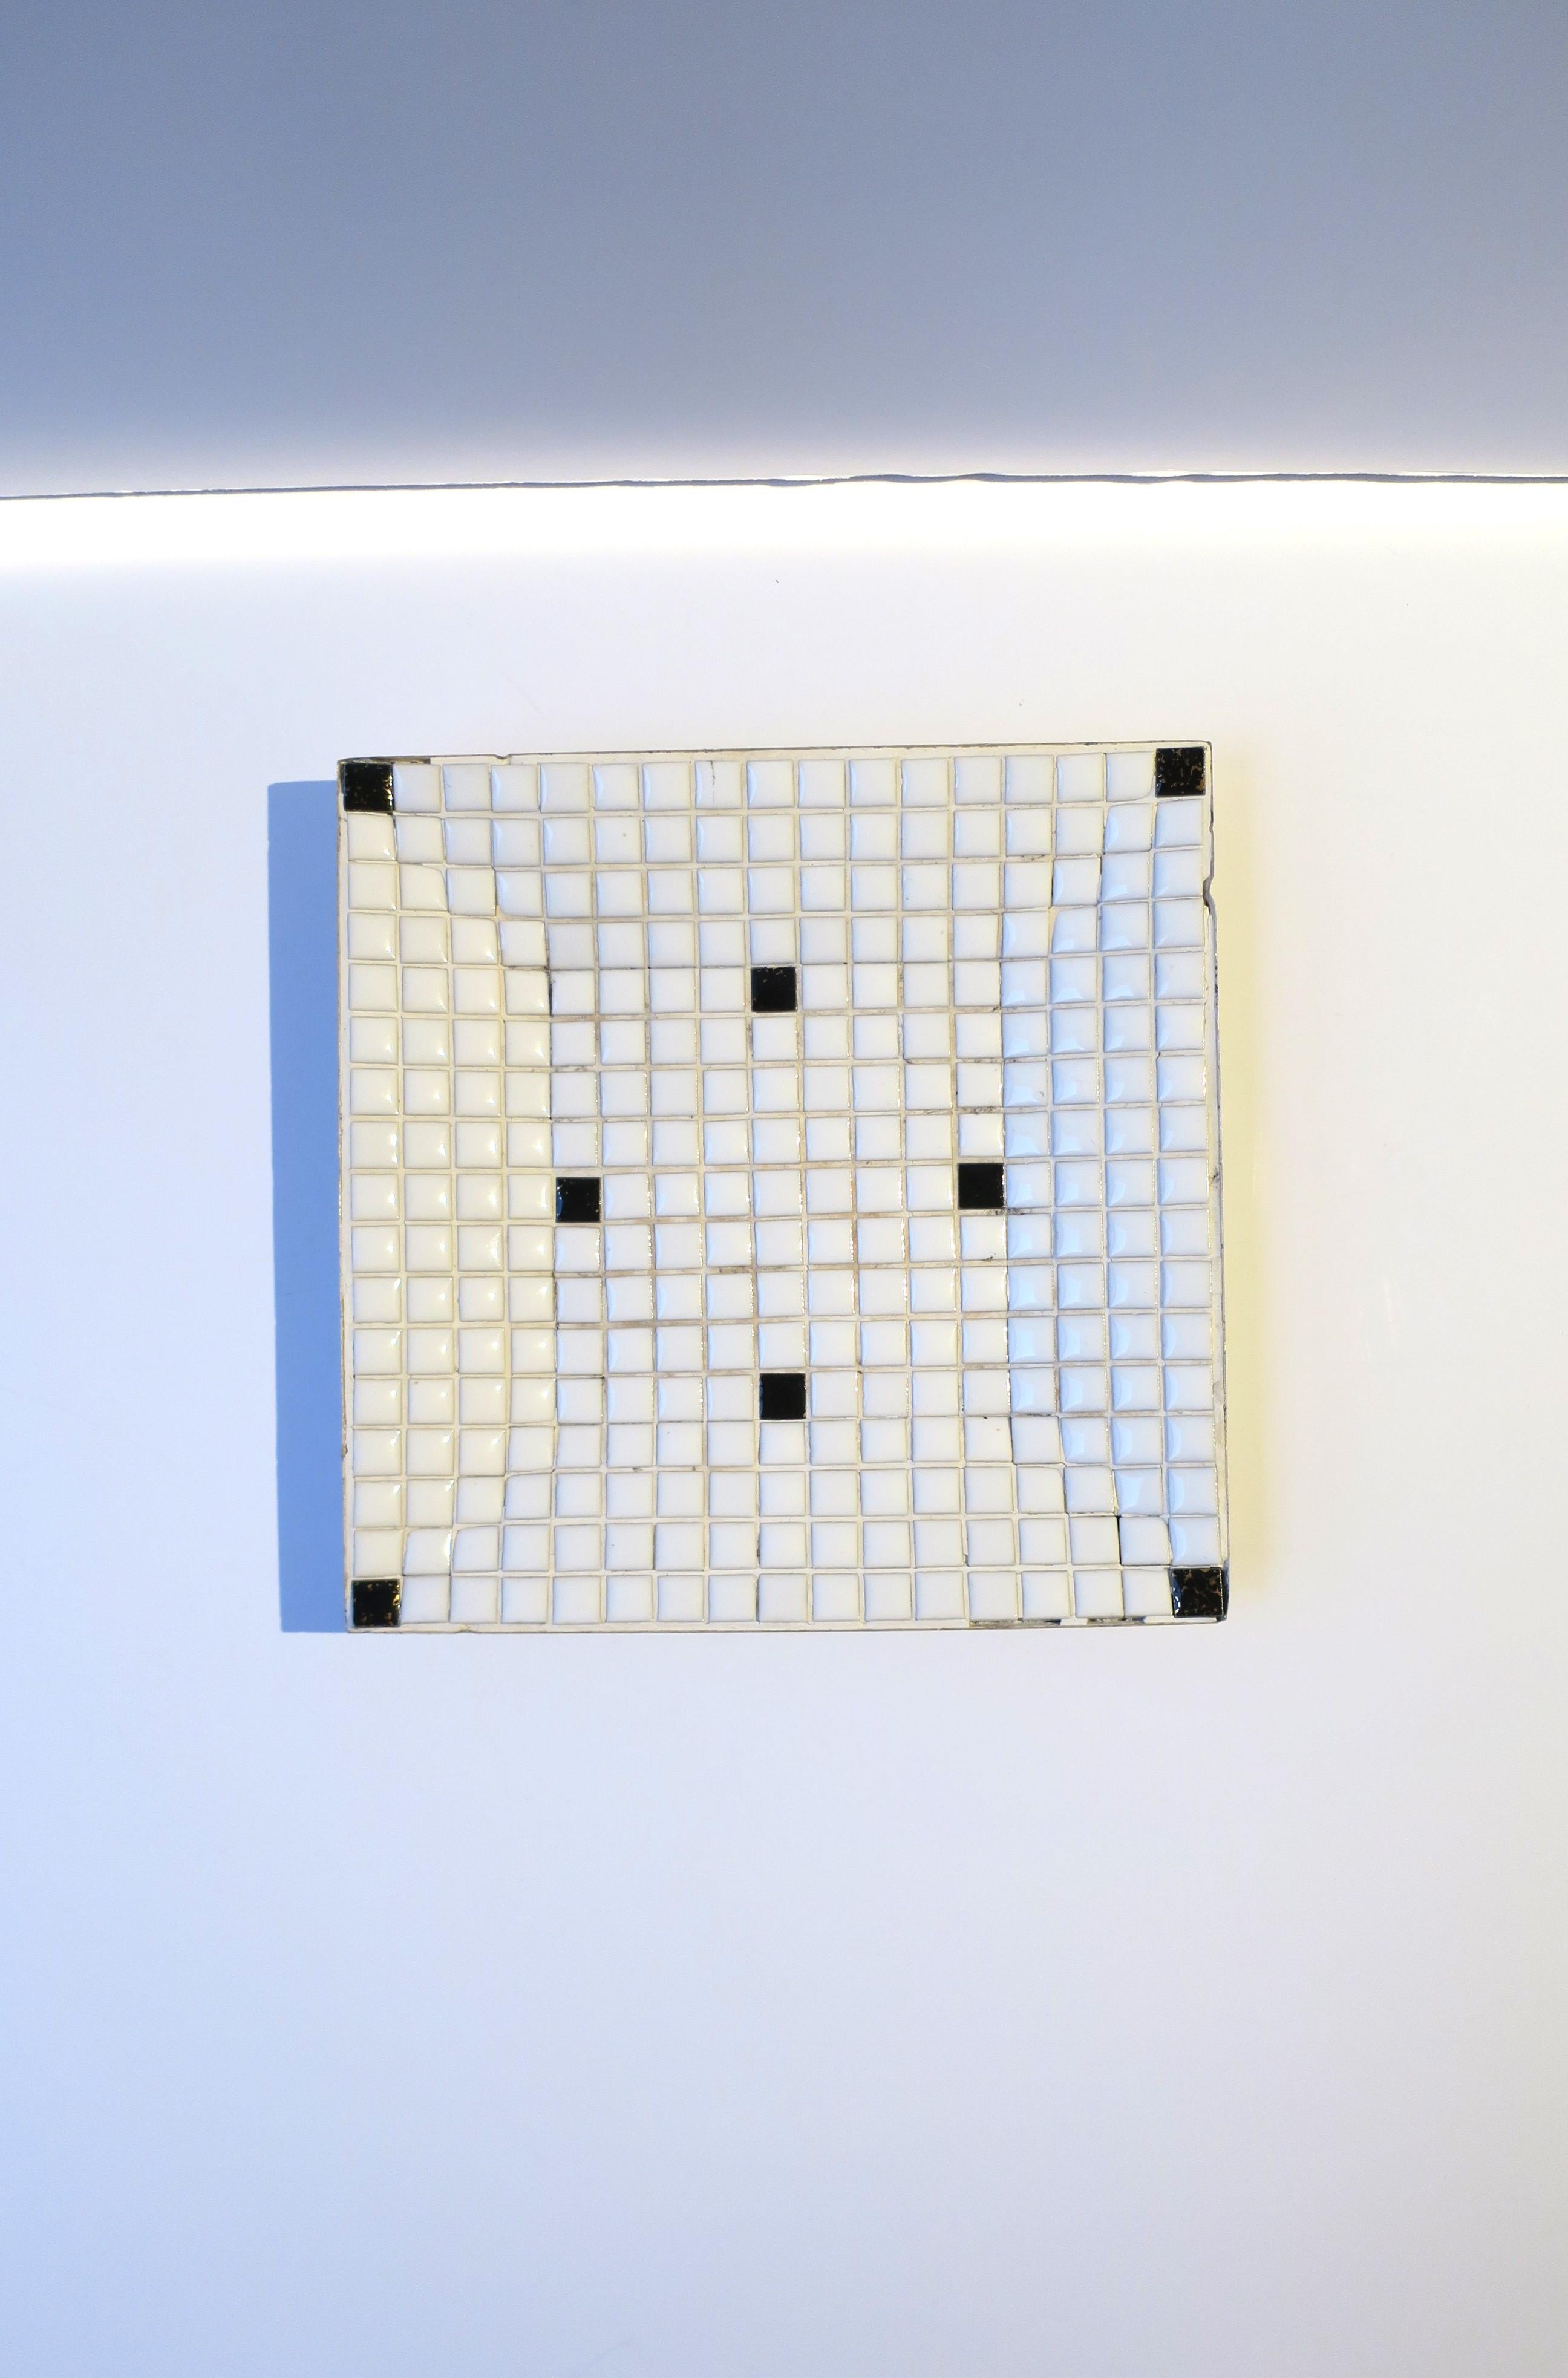 Schwarz-weiße Mosaikfliesenschüssel oder Auffangschale, Midcentury Modern, ca. Mitte des 20. Jahrhunderts, 1960er Jahre, USA. Die Schüssel ist überwiegend weiß mit einigen schwarzen Kacheln, die mit einem Metallboden versehen sind. Abmessungen: .75